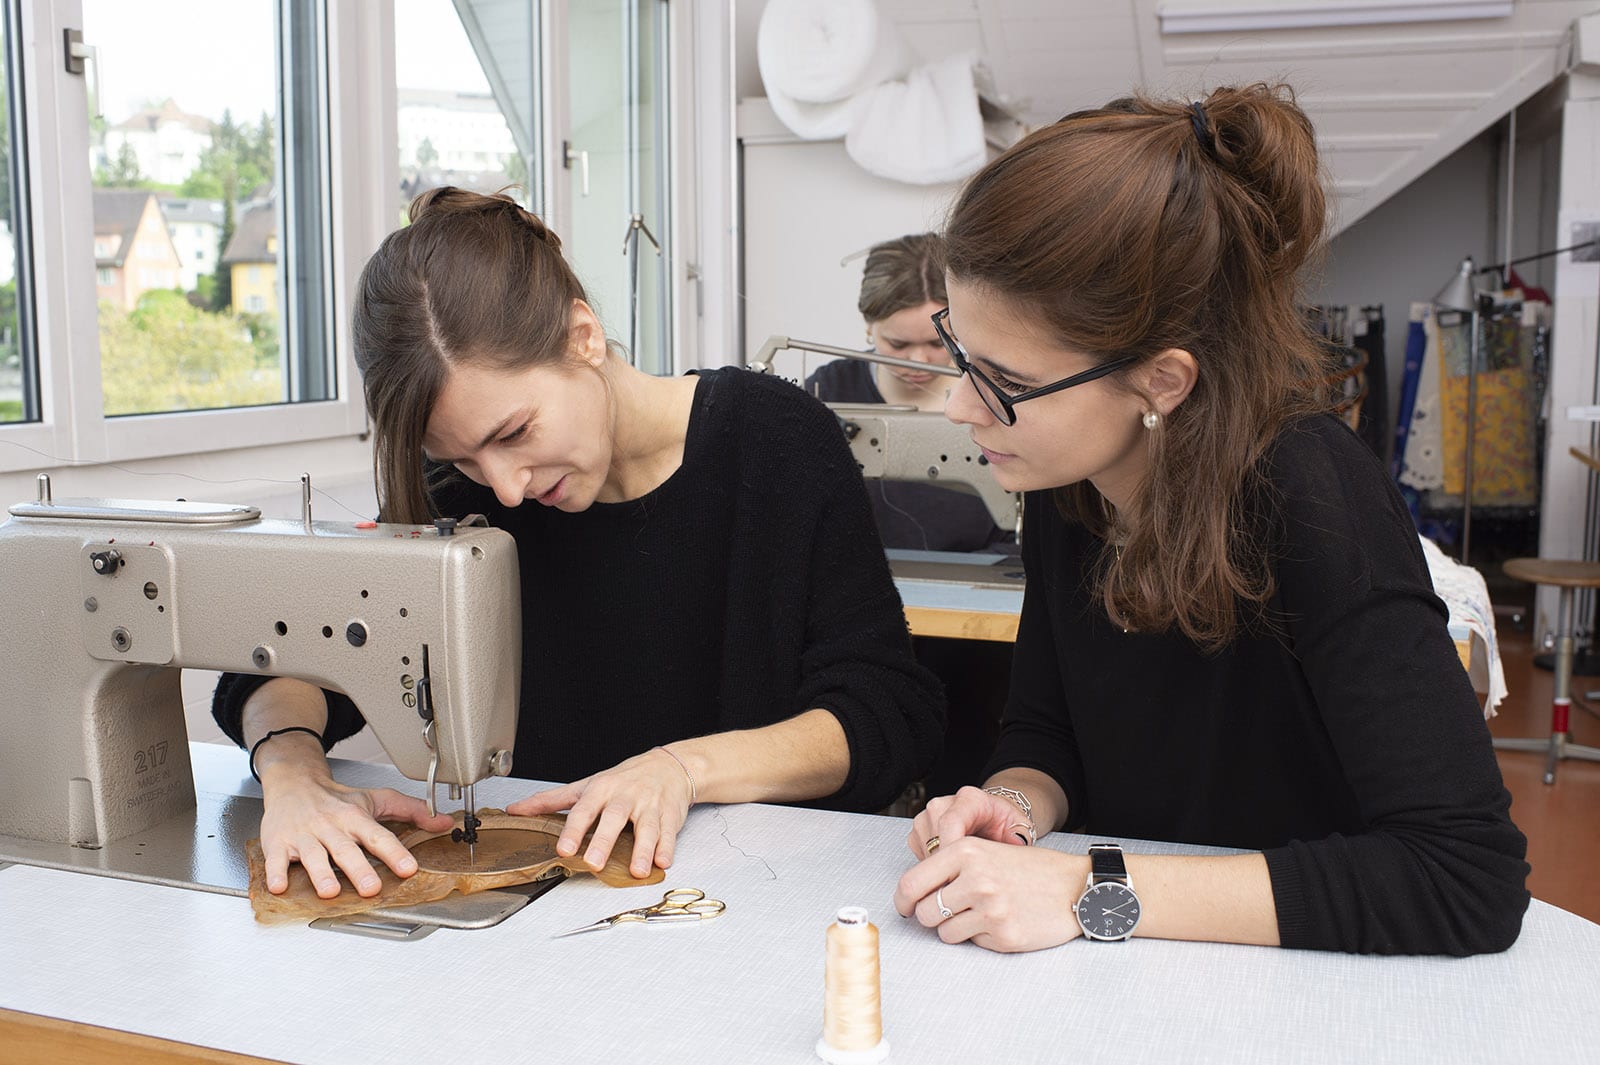 Werkschau 2019, Bachelor Textildesign: Wie gut lässt sich das Textil mit der Nähmaschine bearbeiten?